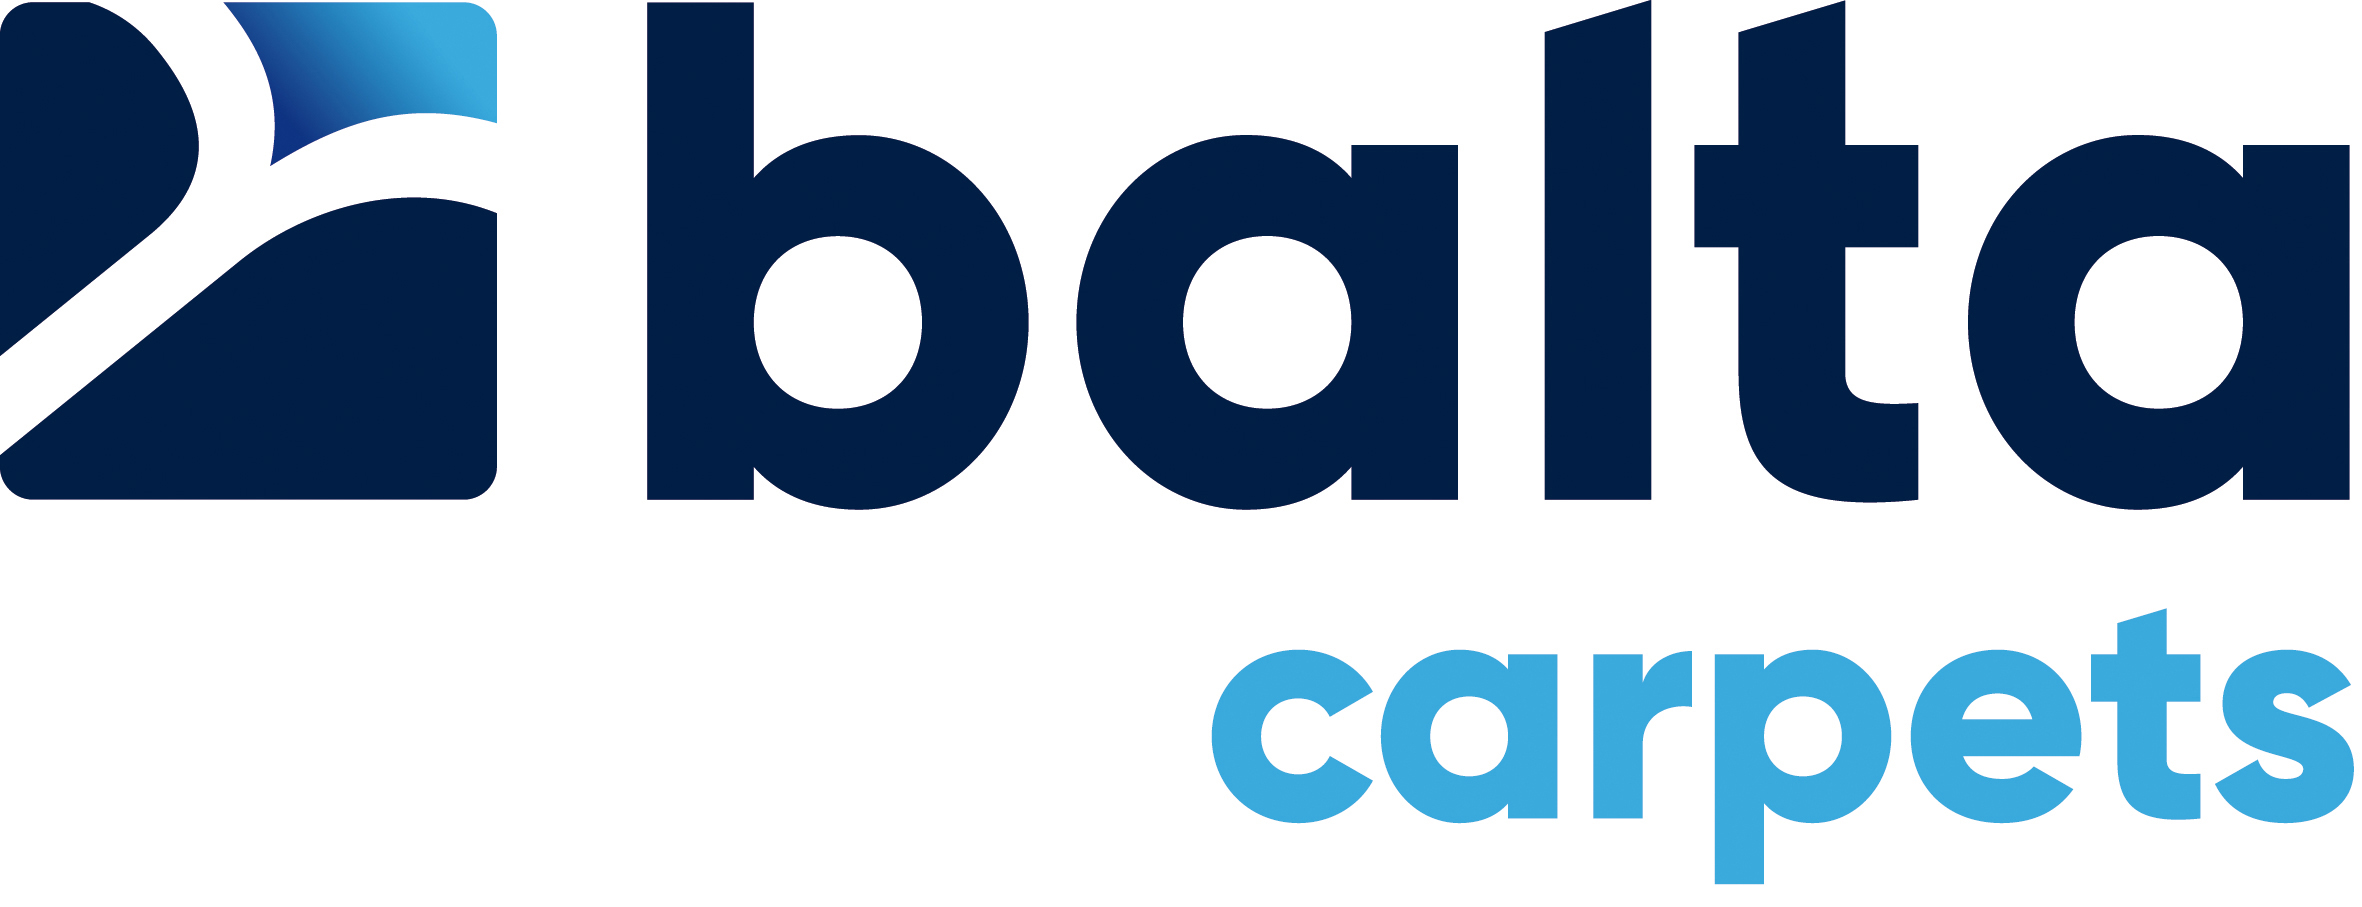 Balta logo